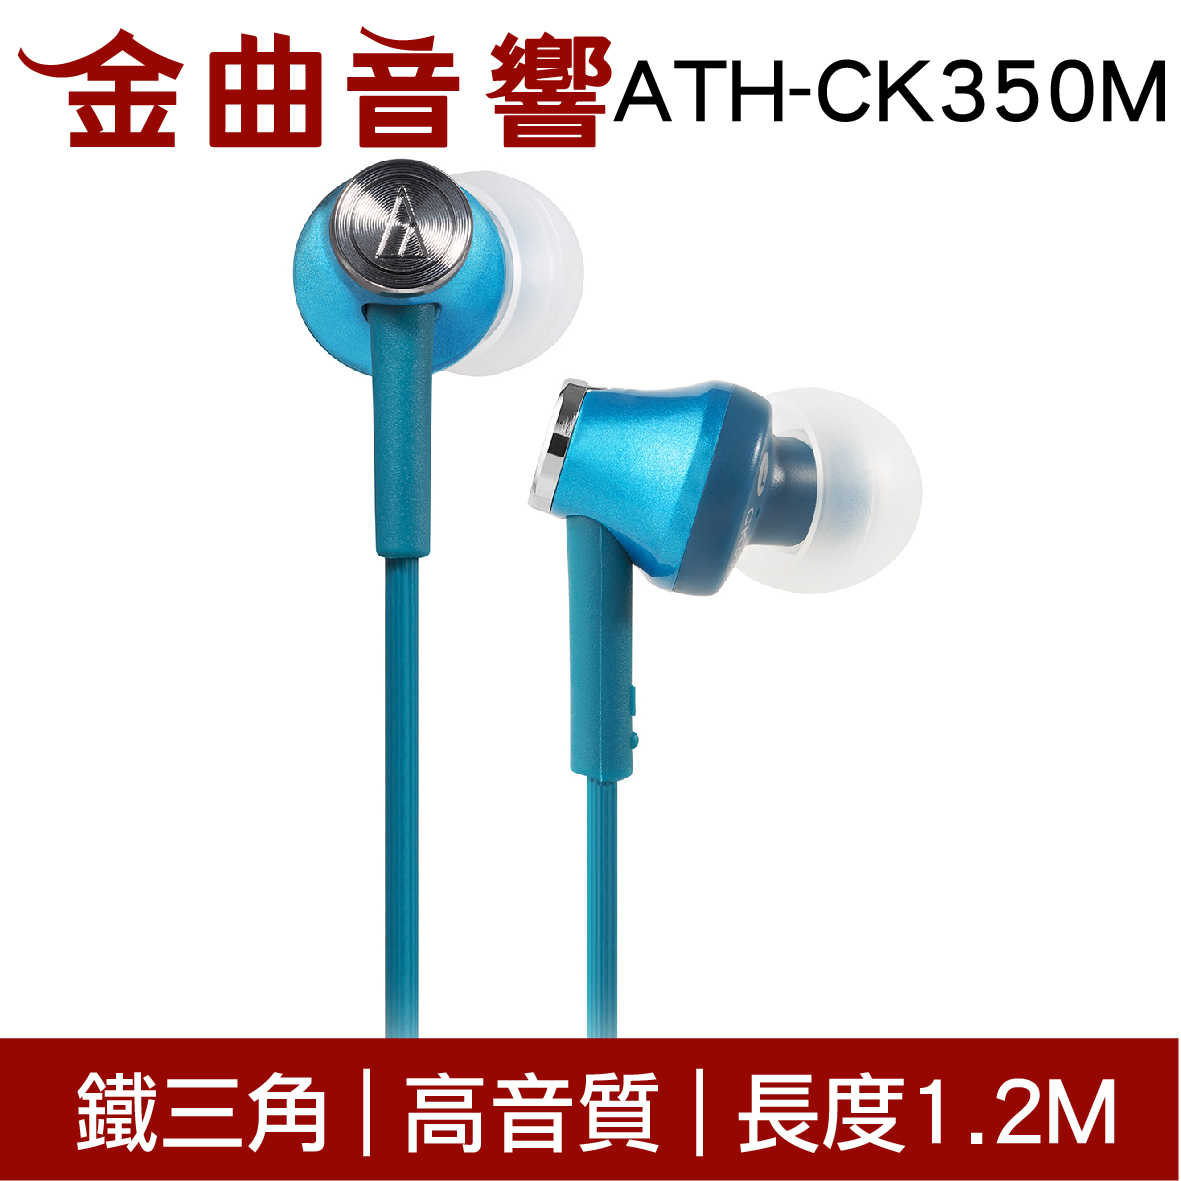 鐵三角 ATH-CK350M 淺藍色 高音質耳道式耳機 | 金曲音響